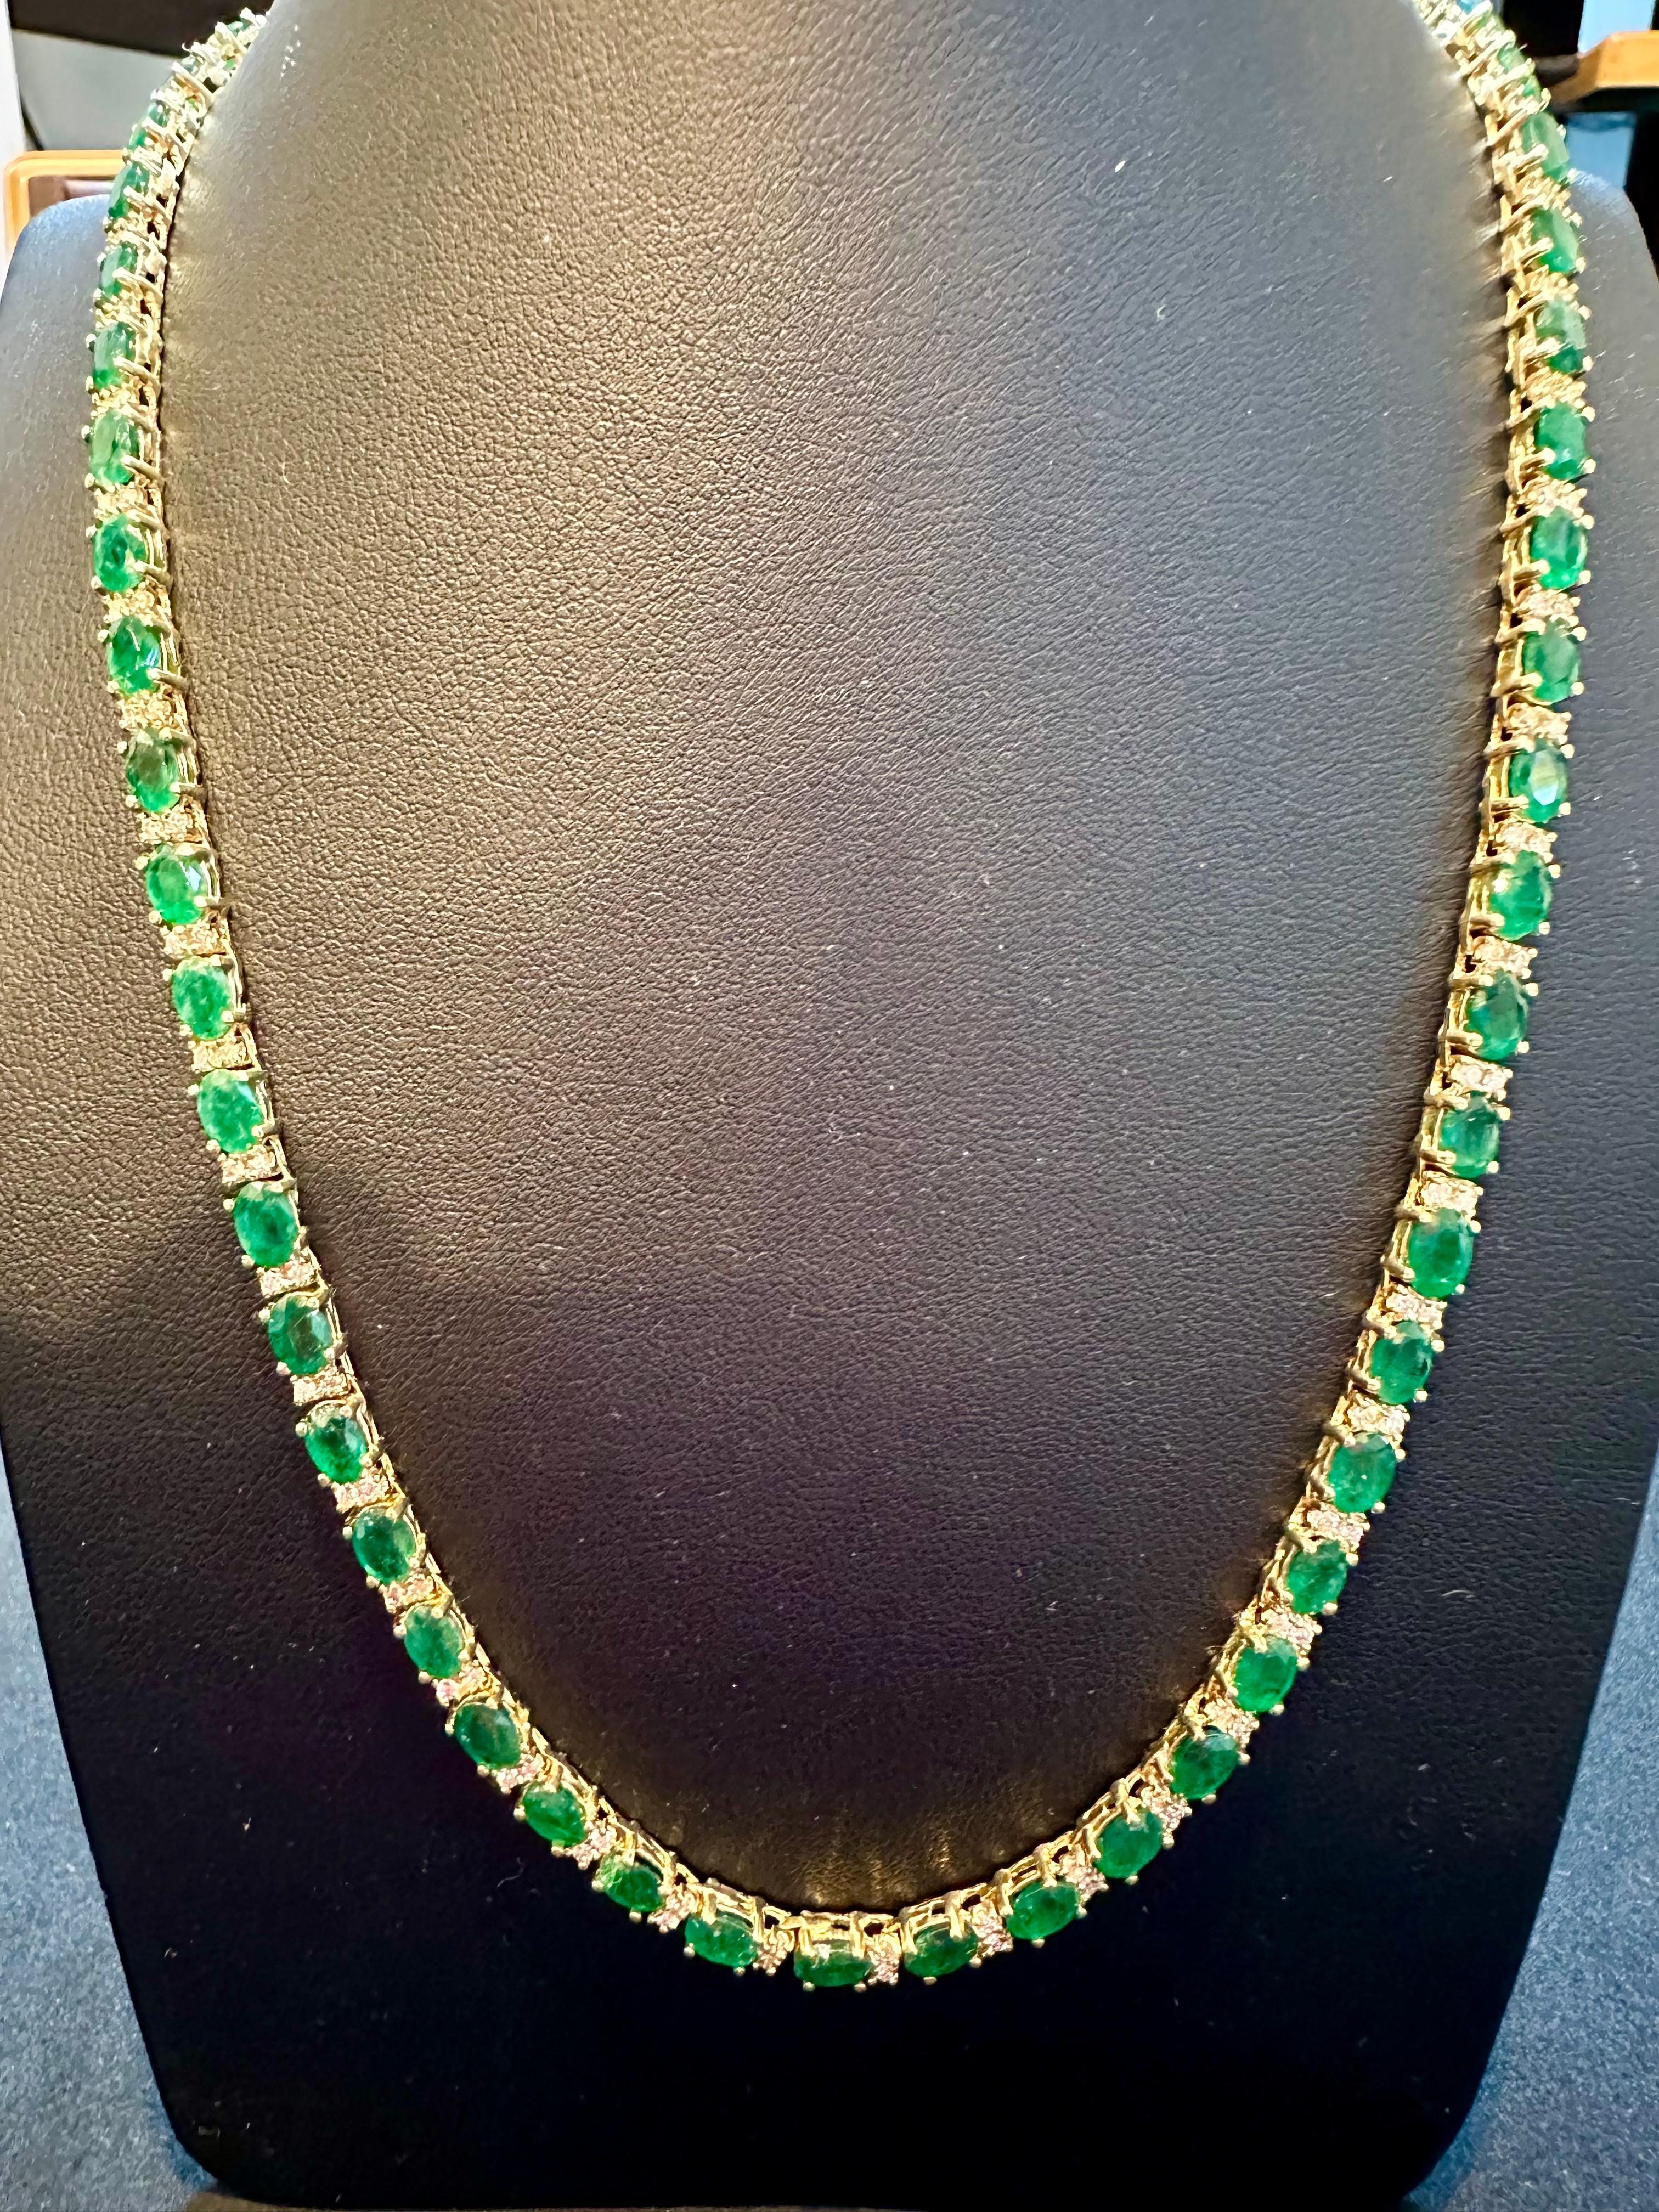 30 Carat Oval Brazilian Emerald & 3 Carat Diamond Tennis Necklace 14 Karat Gold For Sale 4